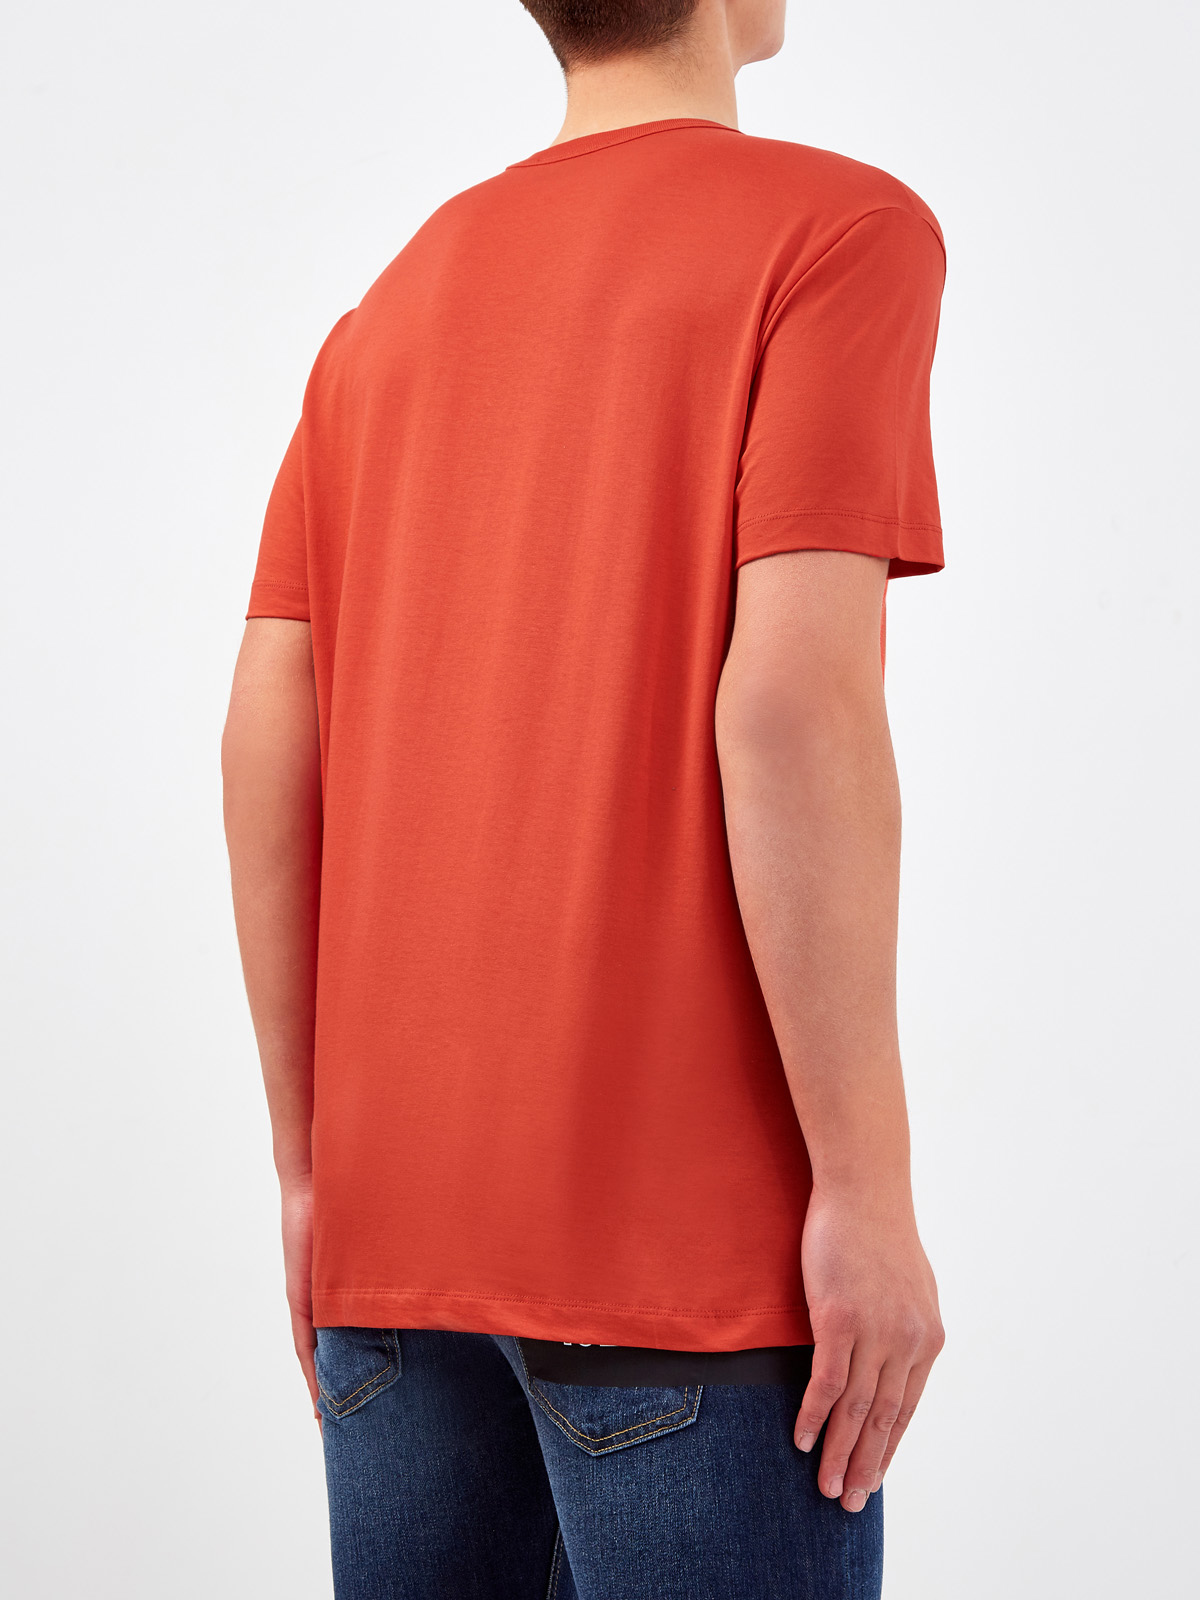 Хлопковая футболка с контрастным логотипом бренда ICE PLAY, цвет оранжевый, размер L - фото 4